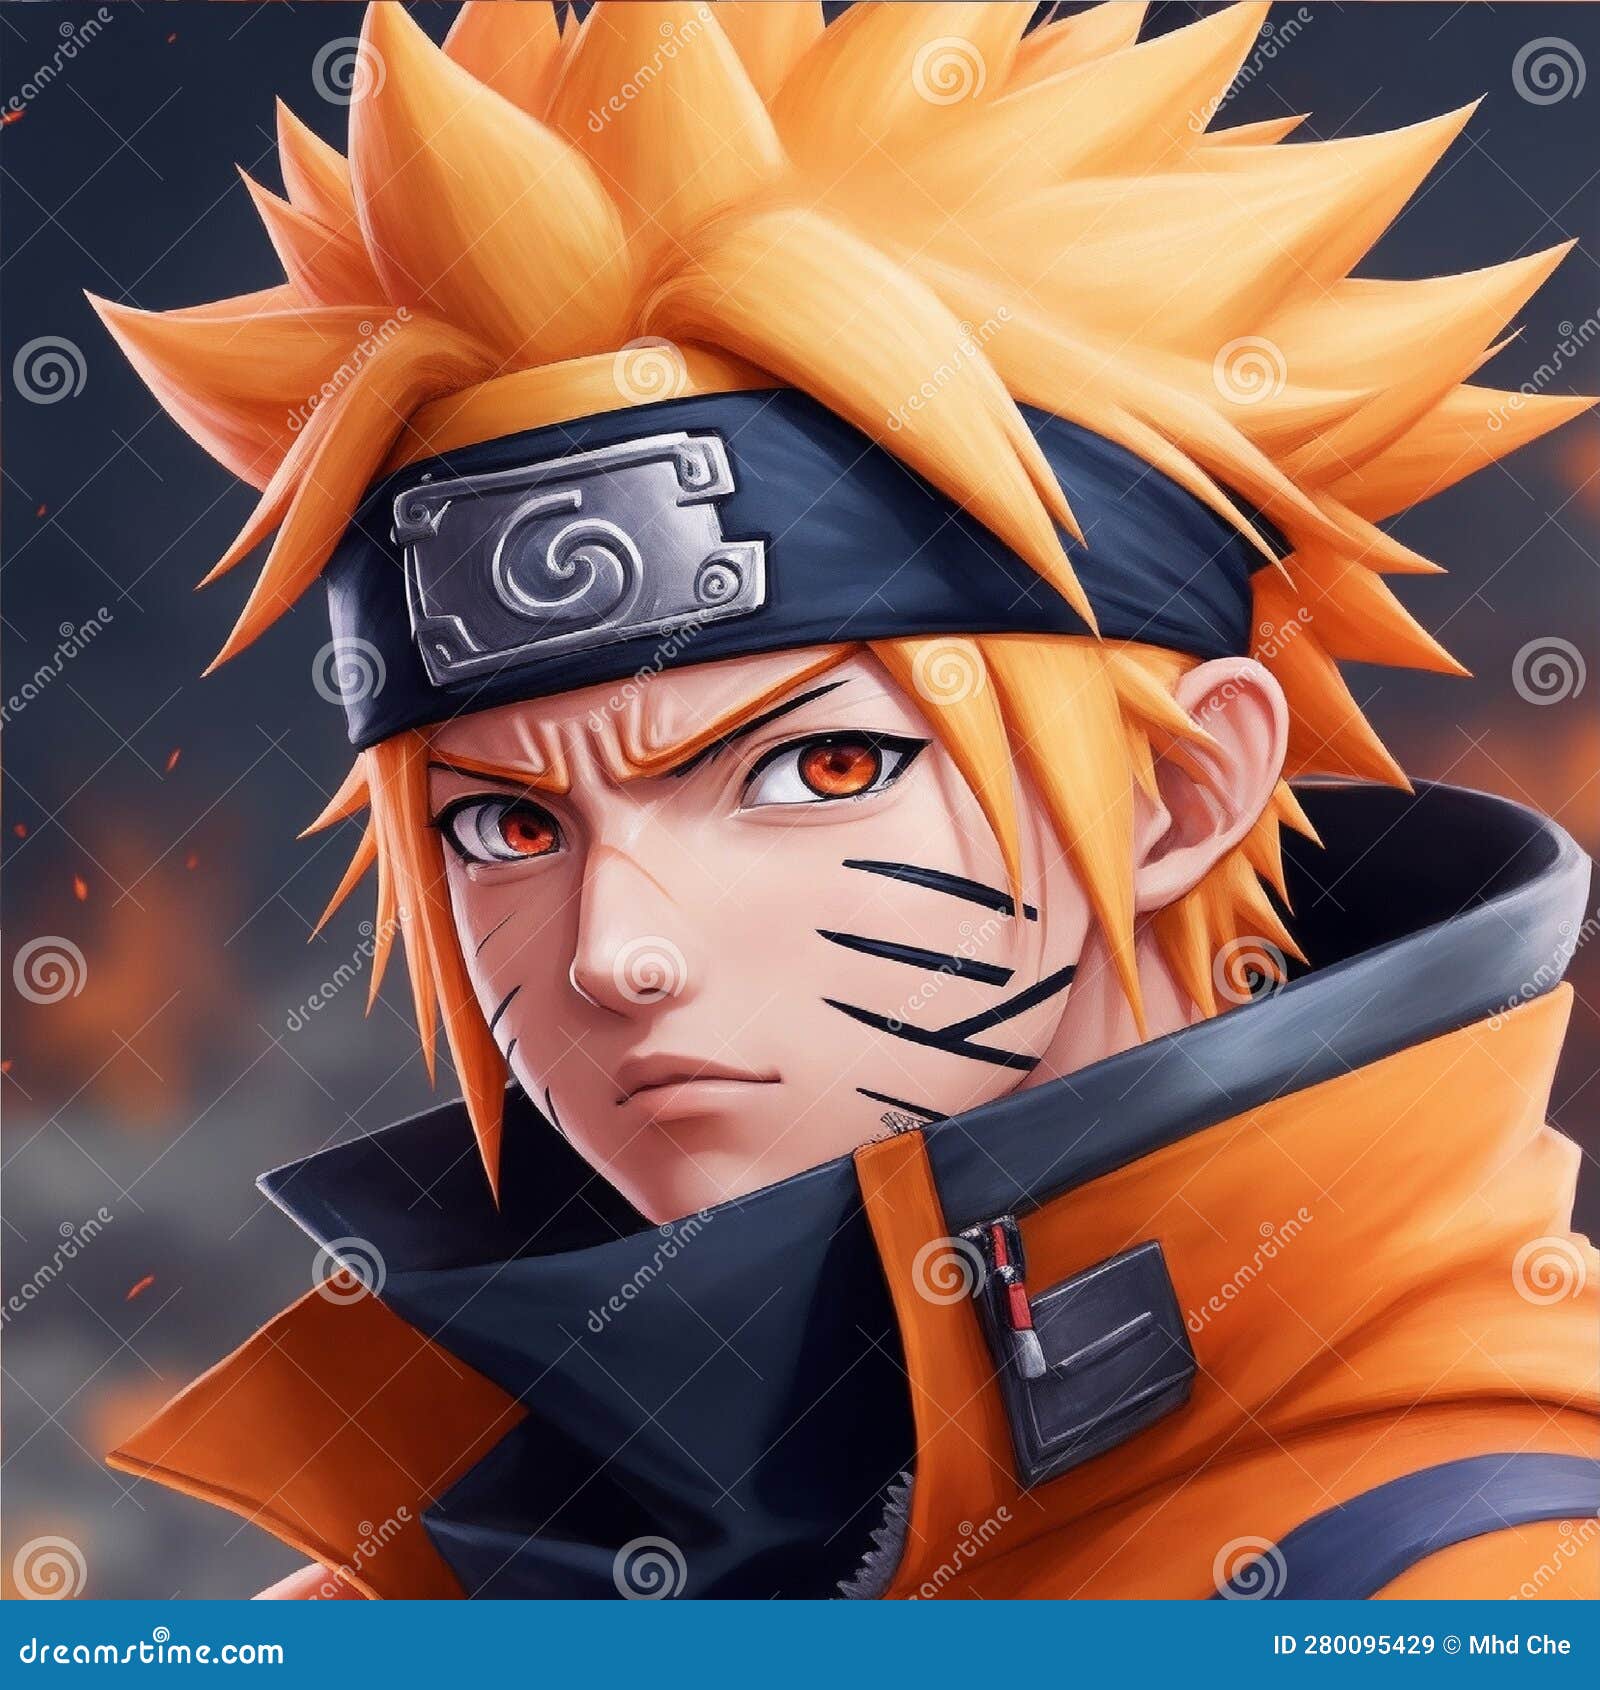 Naruto Uzumaki, Personagens de Naruto